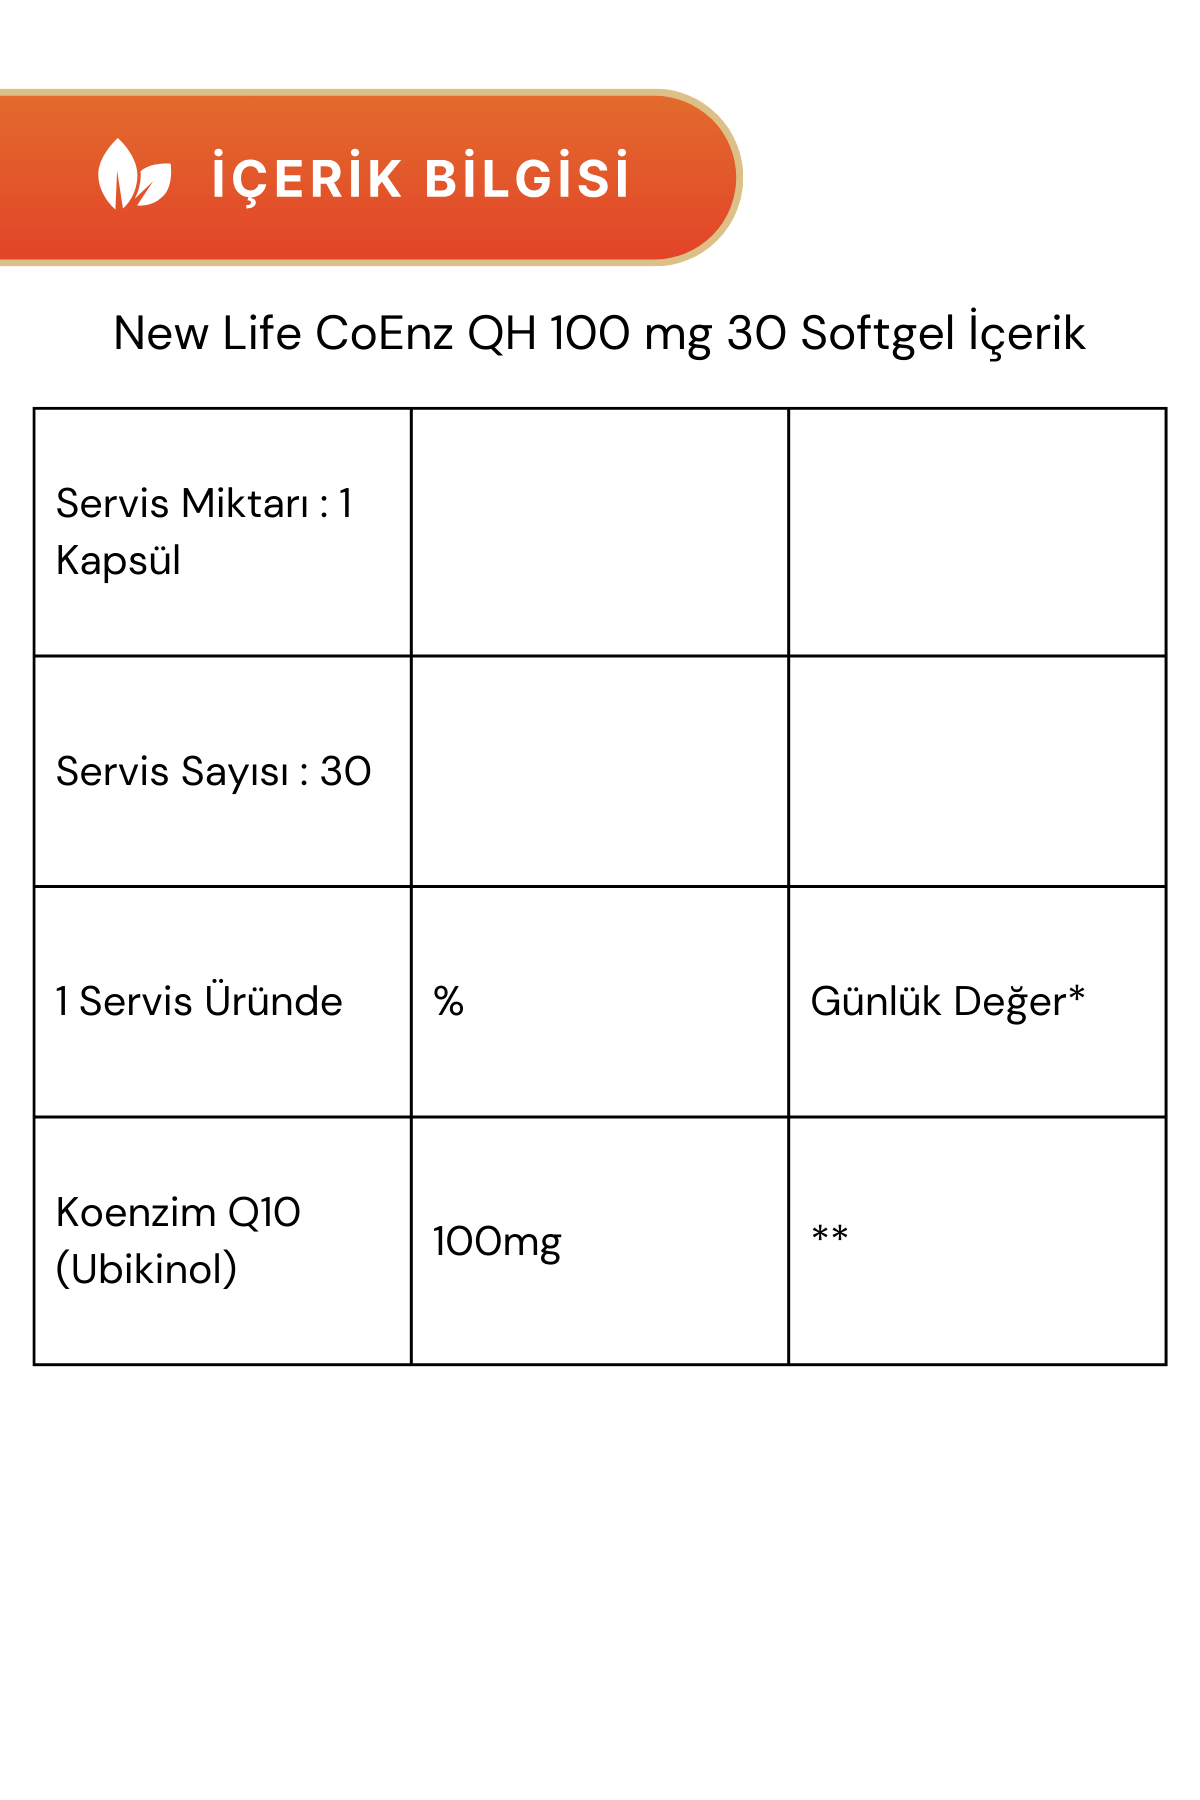 New Life EFA S-1200 45 Kapsül & CoEnz QH 30 Softgel